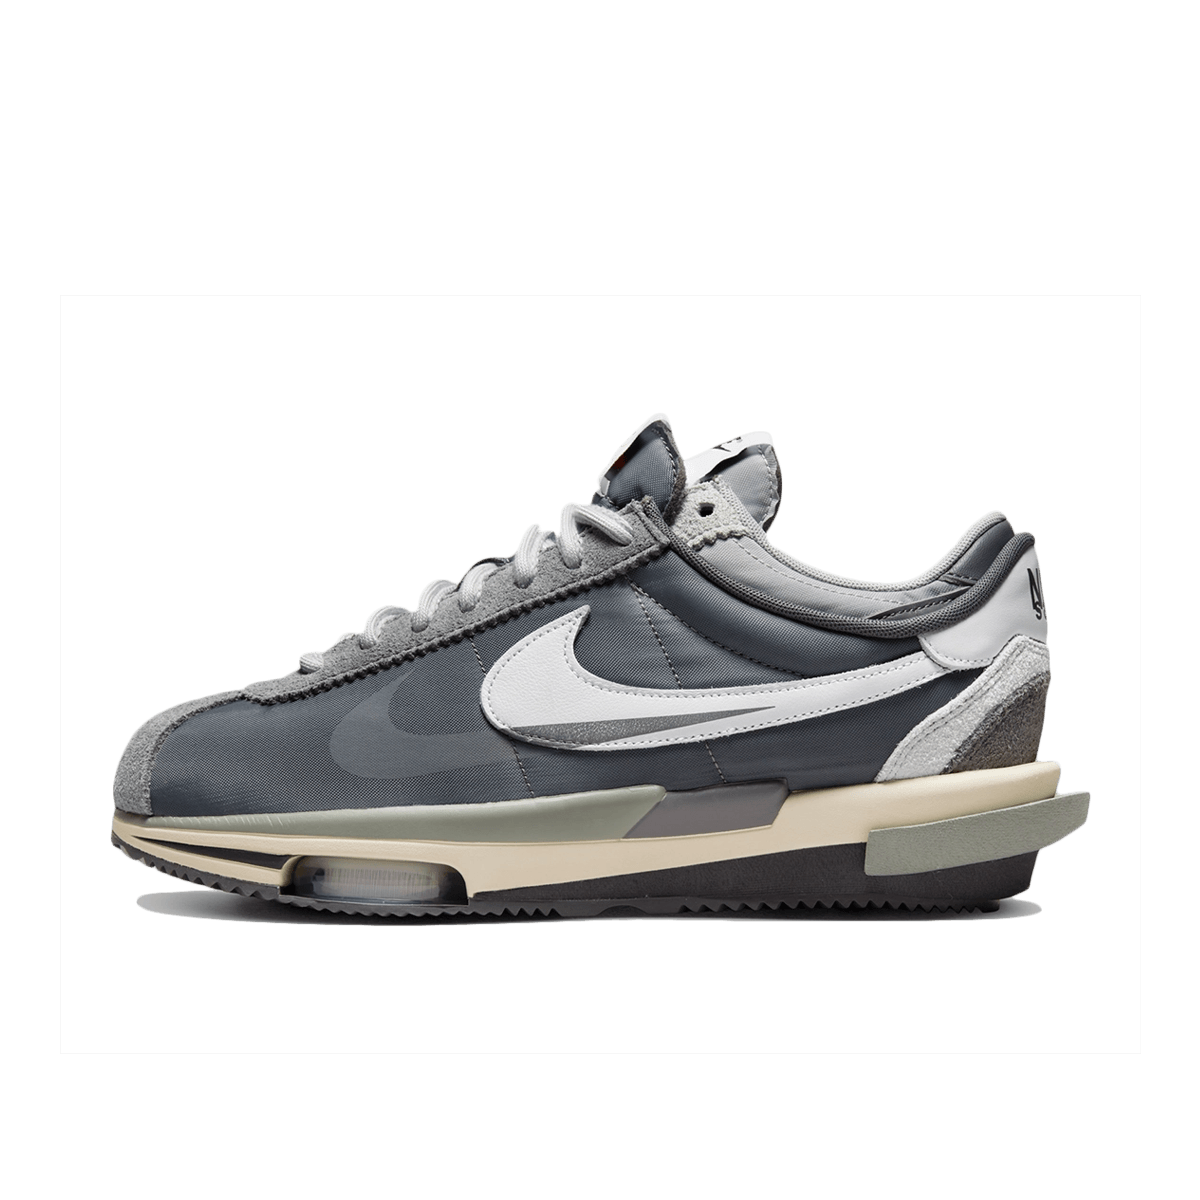 Sacai x Nike Cortez 4.0 'Grey'